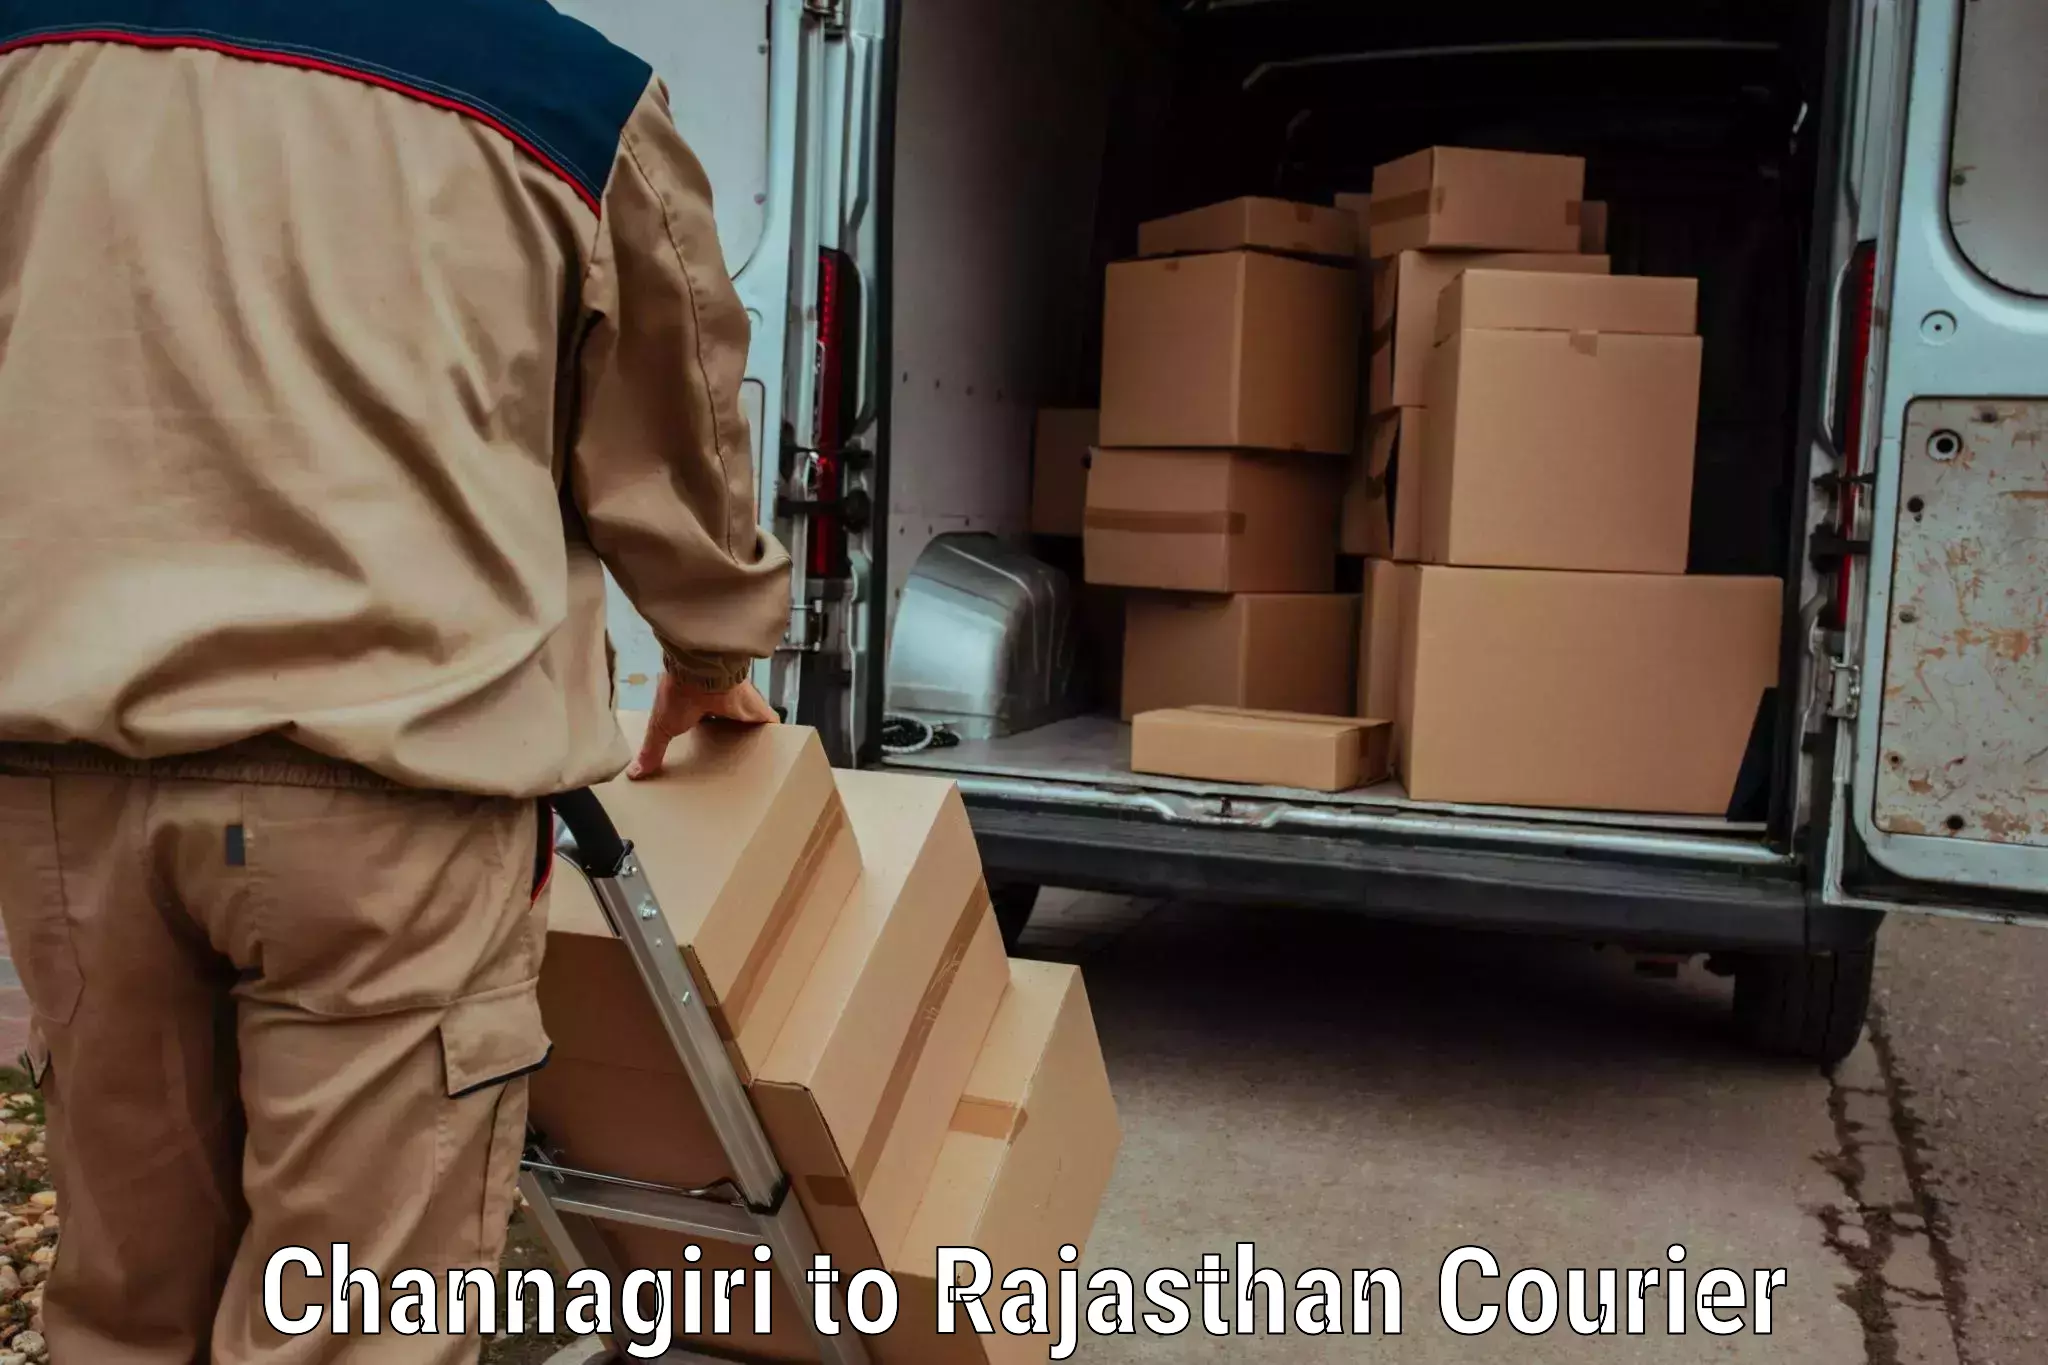 Multi-national courier services Channagiri to Sagwara